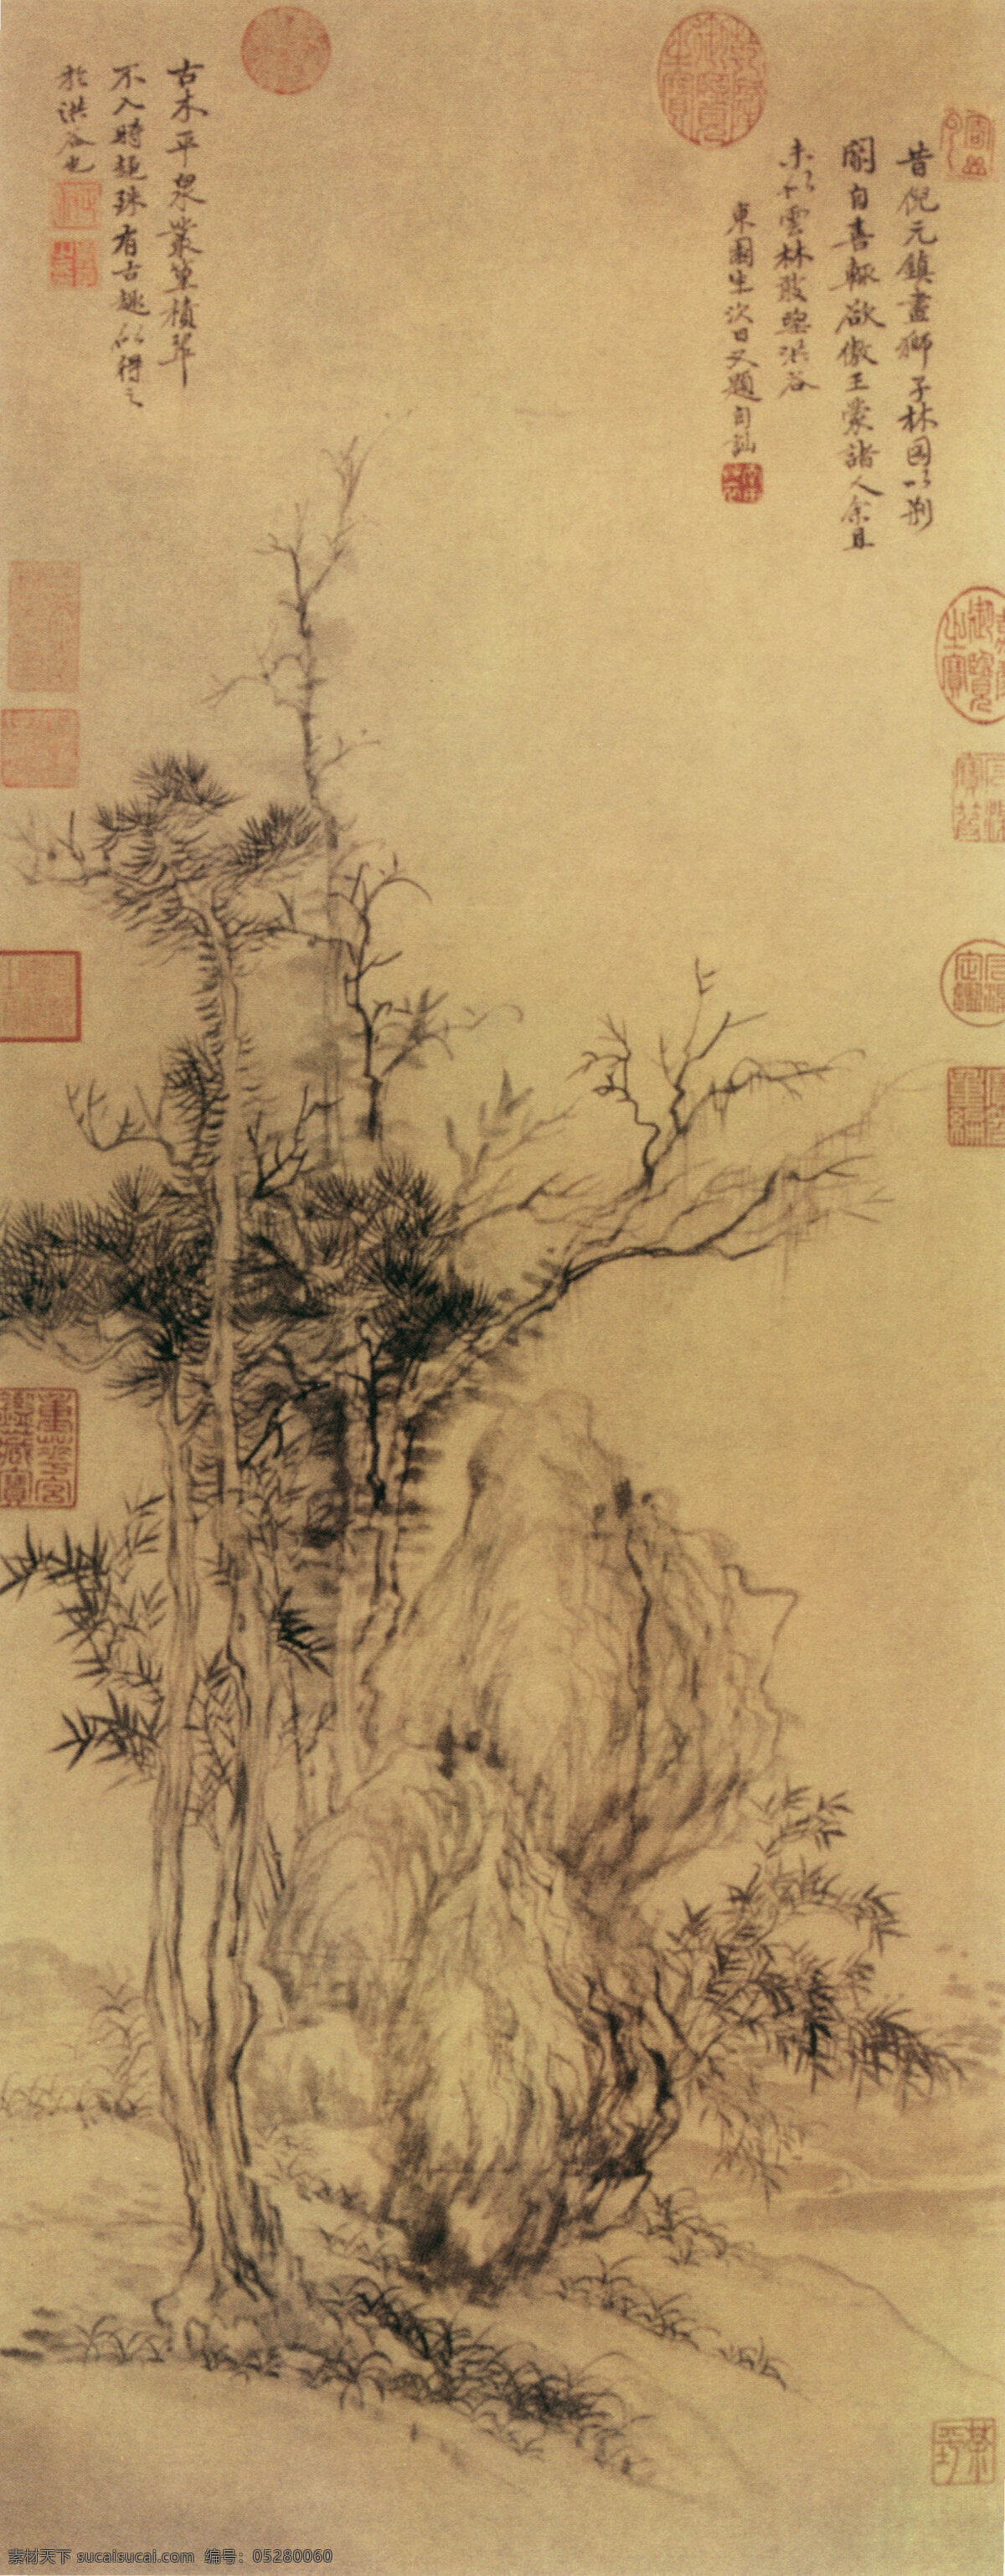 中国画 山水 古典 艺术 绘画书法 文化艺术